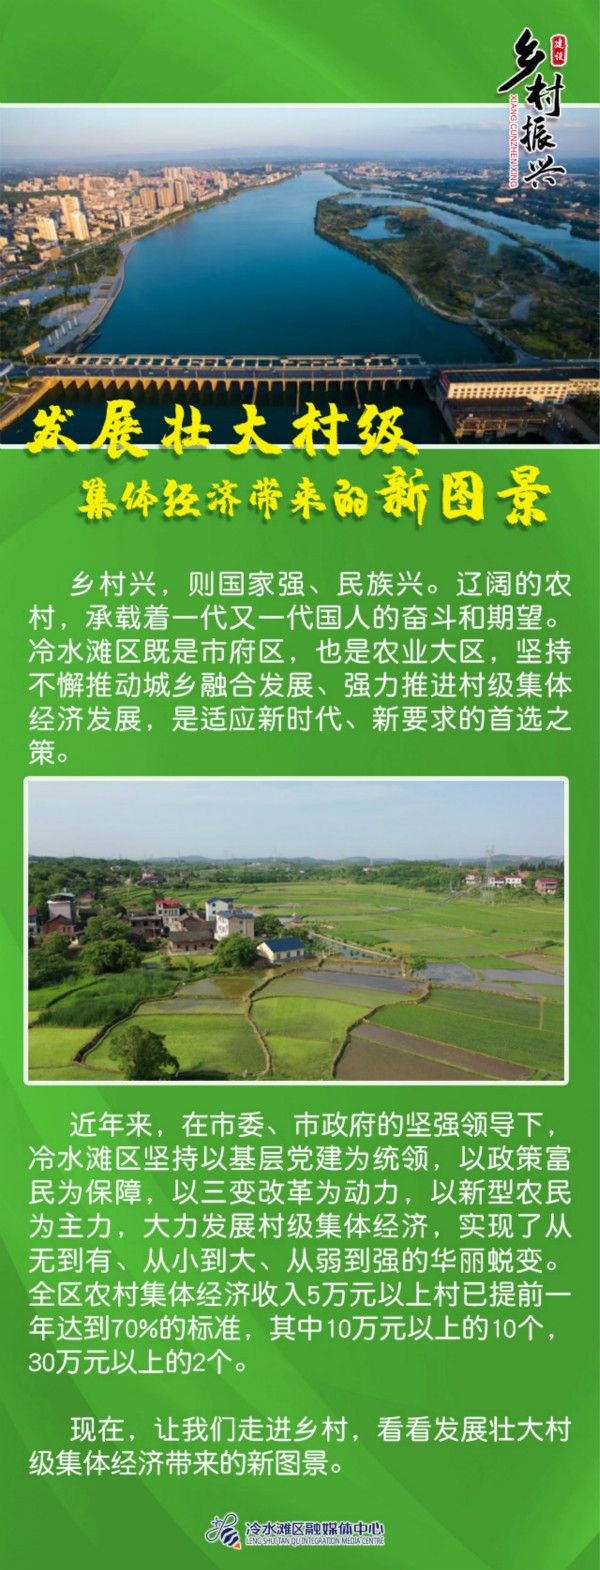 乡村振兴丨冷水滩 发展壮大村级集体经济带来的新图景 湖南频道